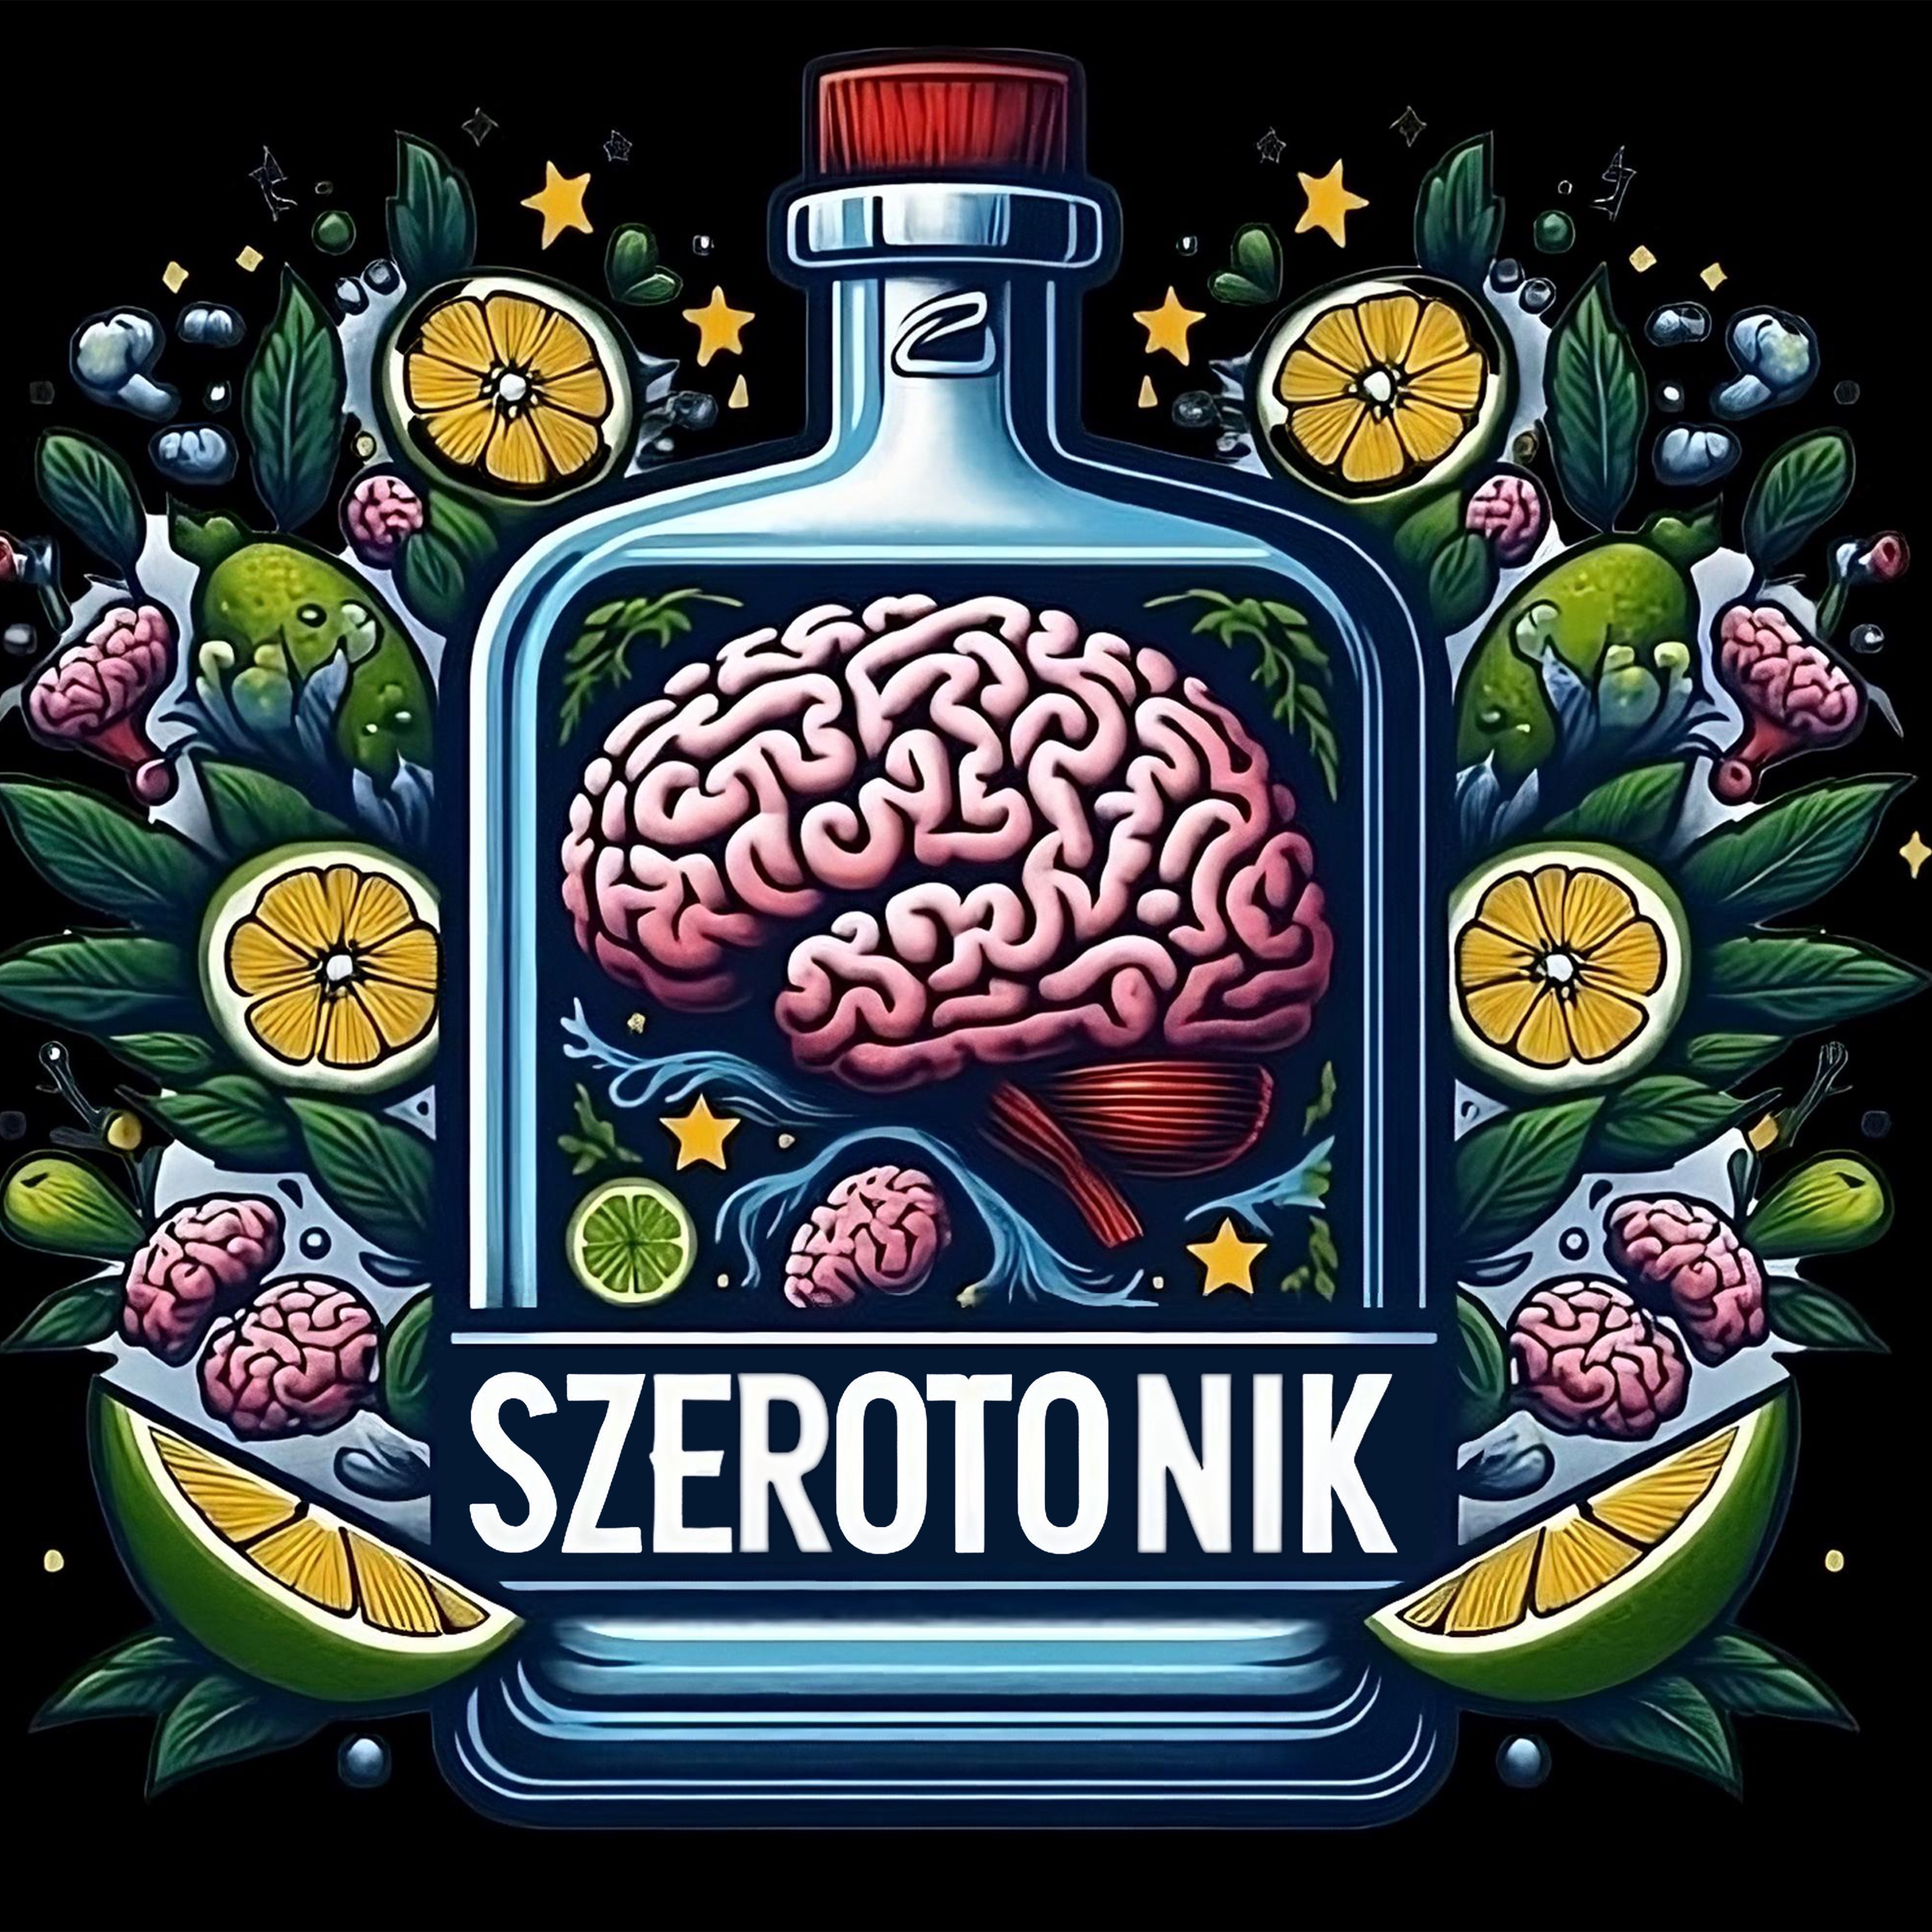 Szerotonik logo